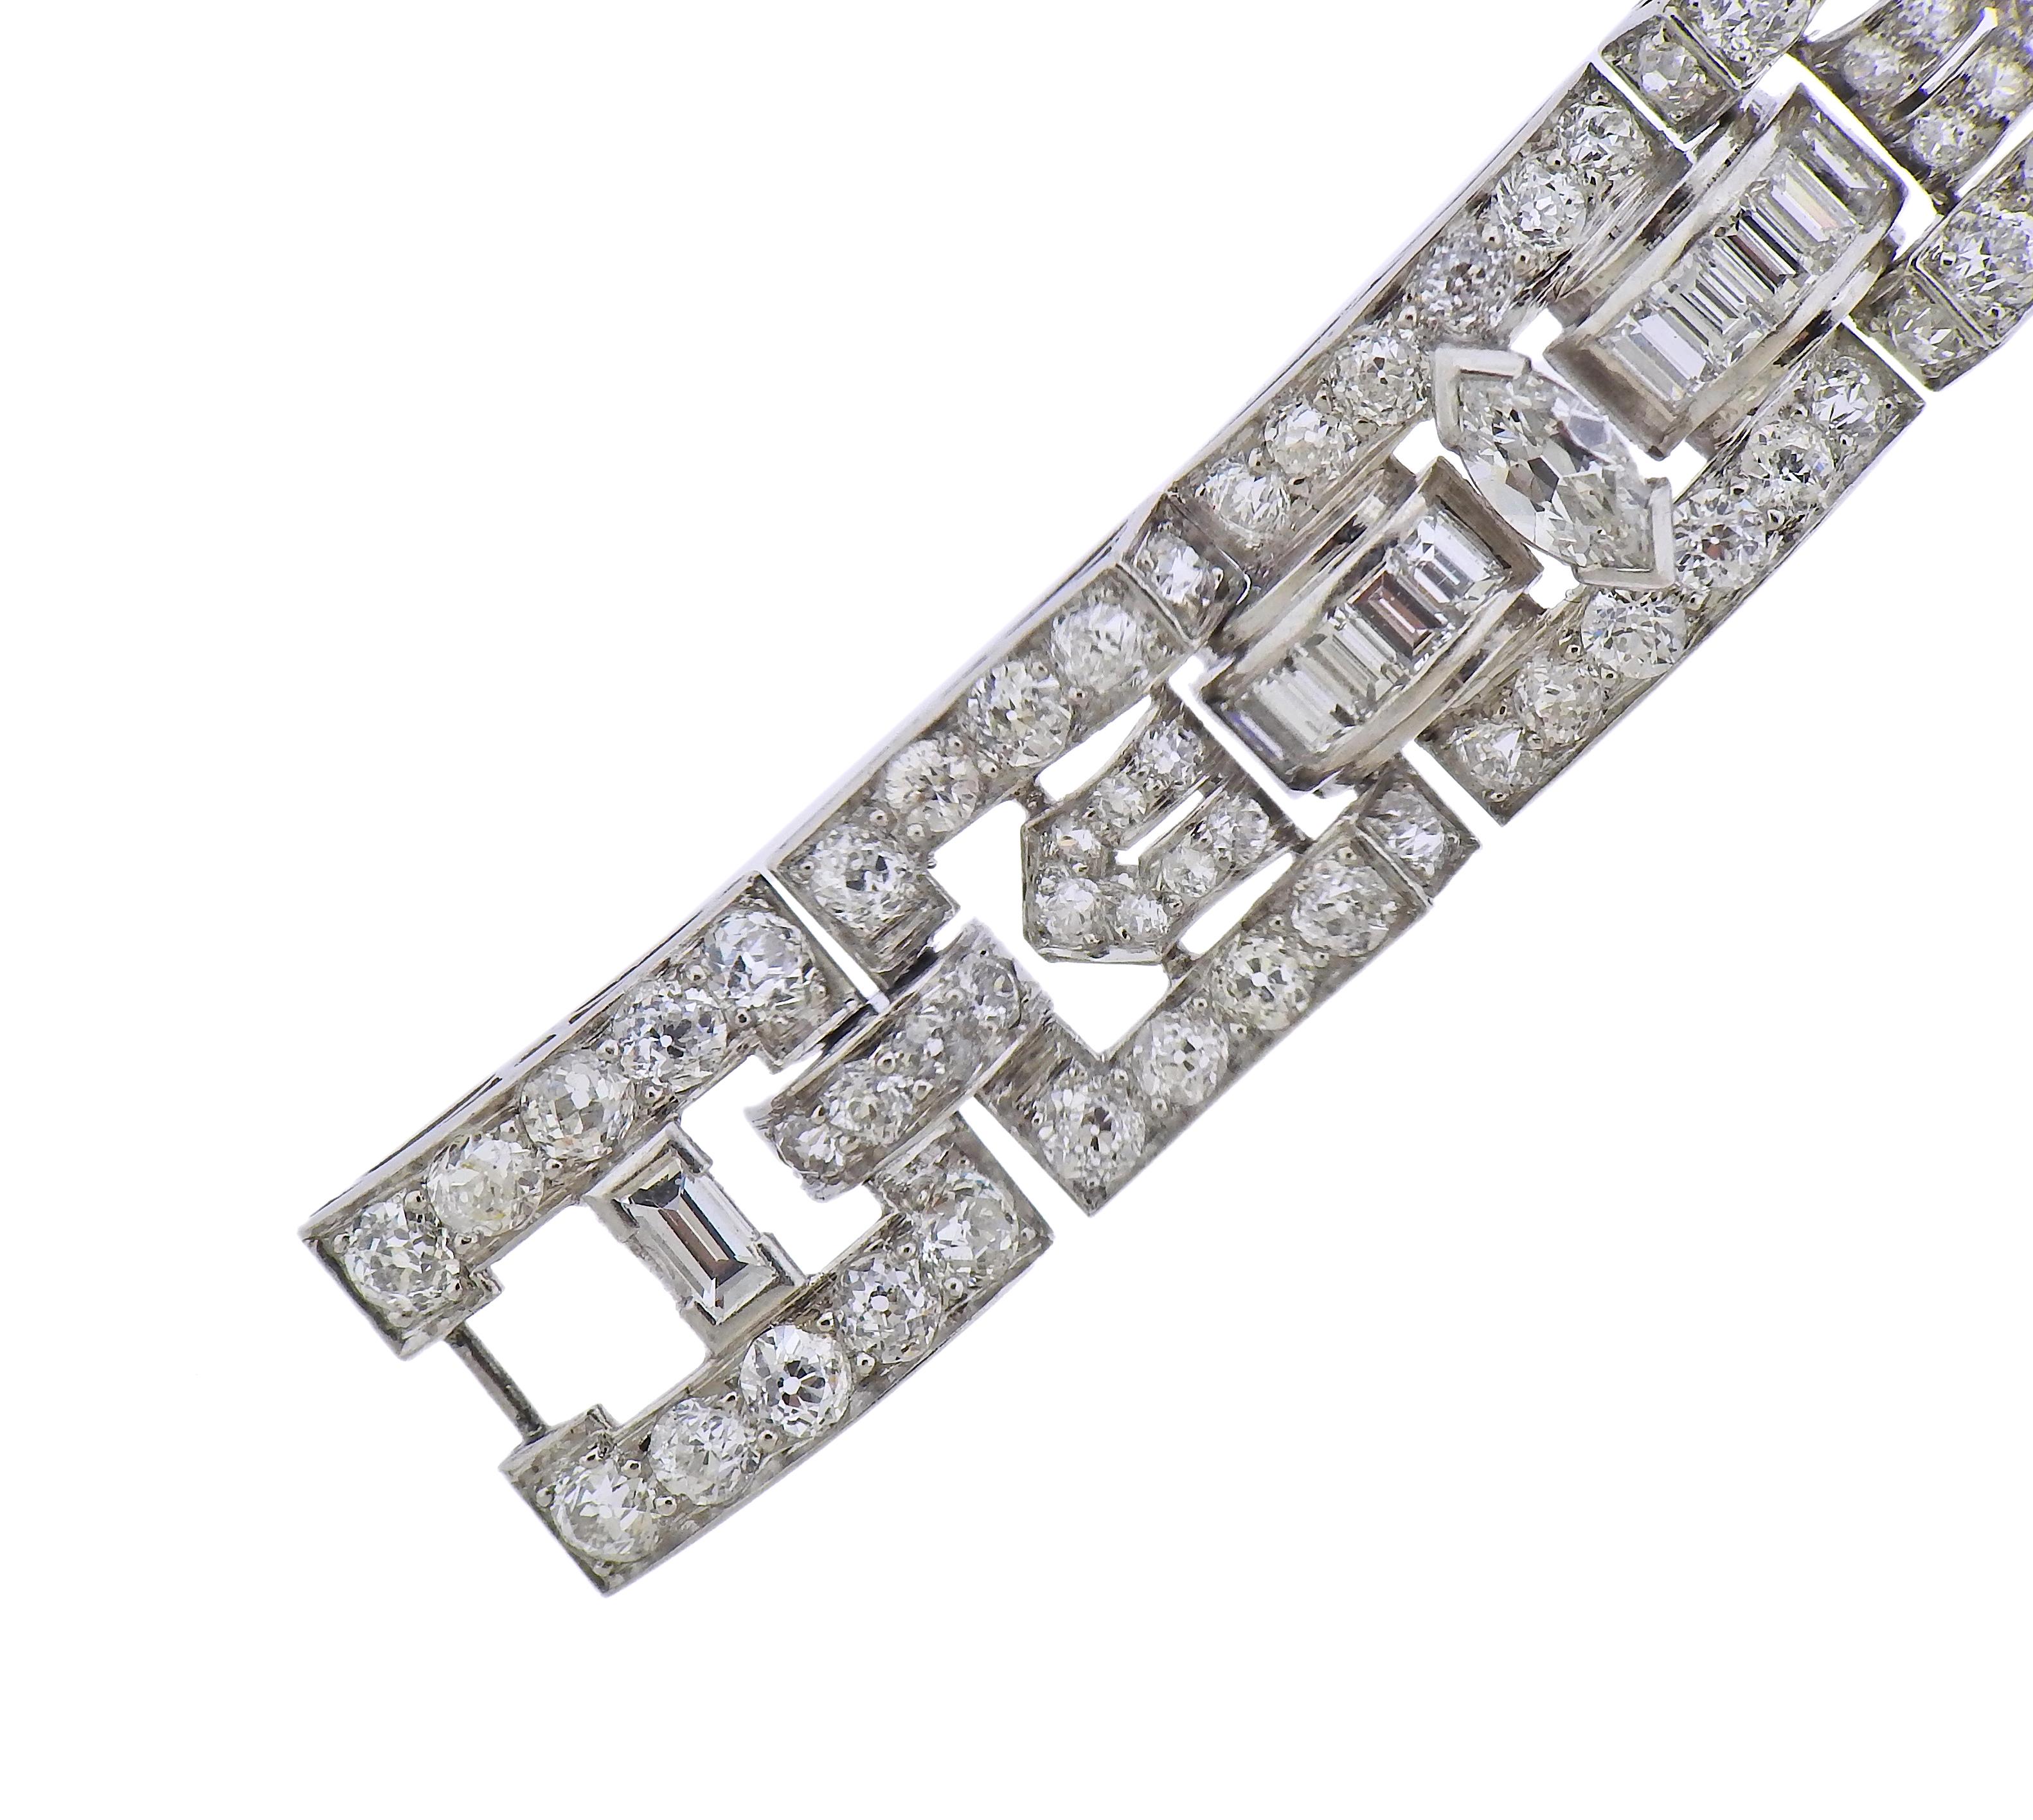 Exquis bracelet en platine Art déco de Cartier, datant des années 1930, avec environ 12 carats de diamants. Le bracelet mesure 7